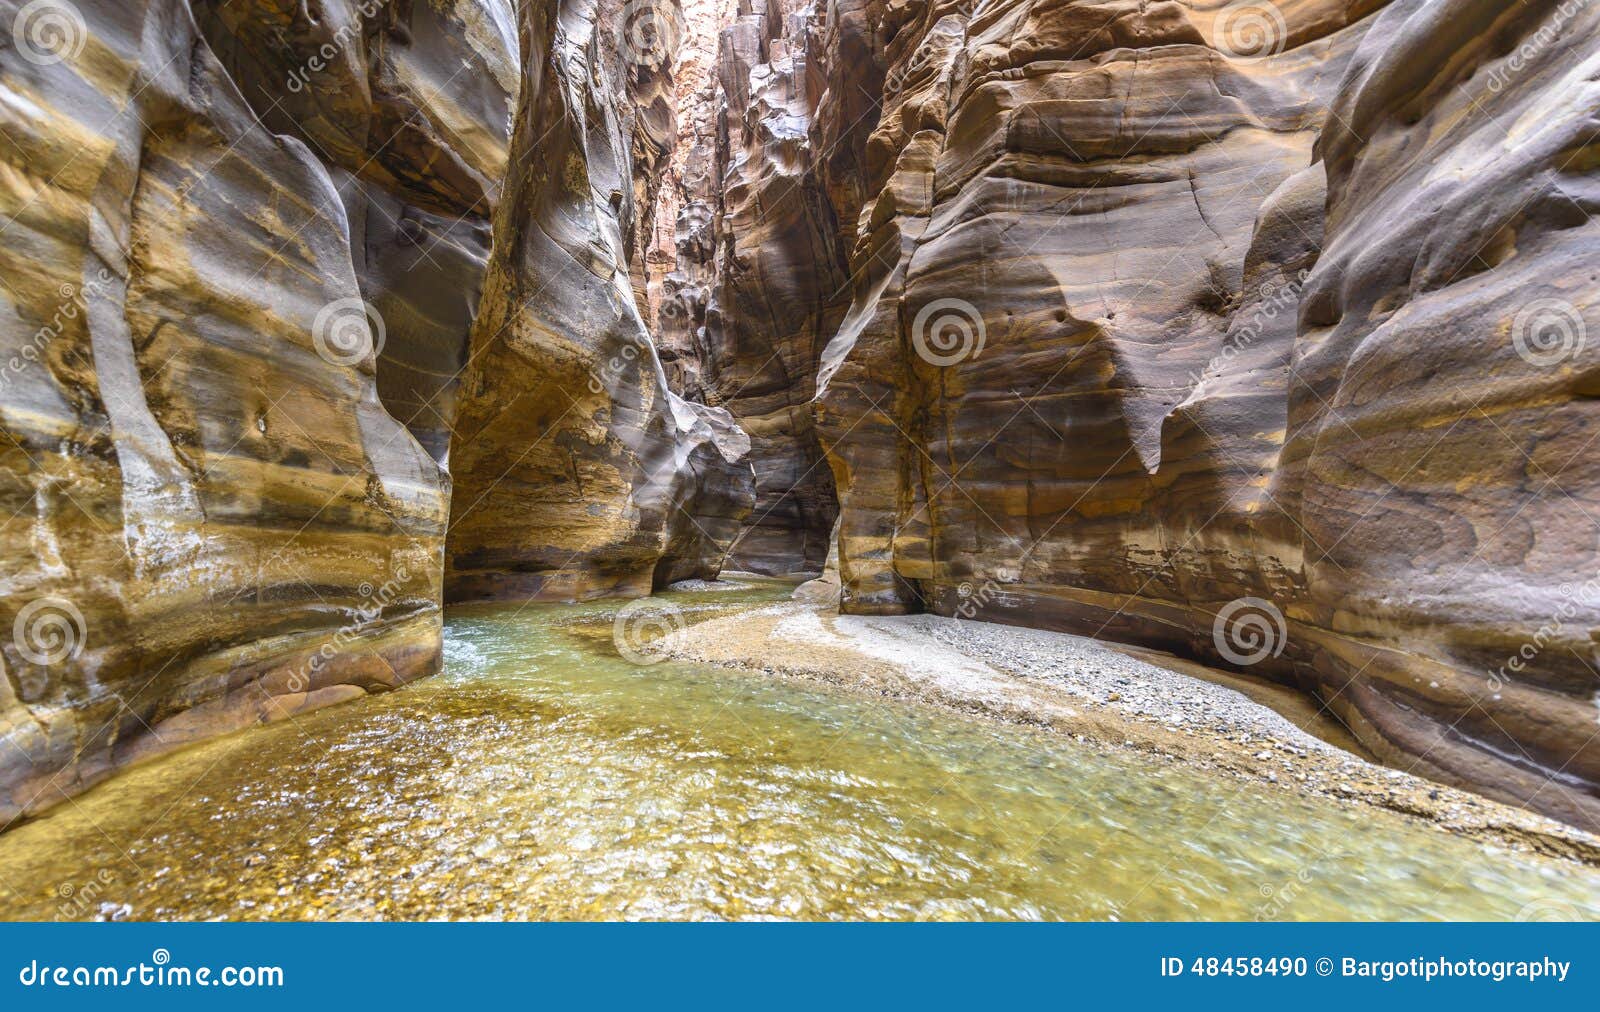 grand canyon of jordan,wadi al mujib natural reserve